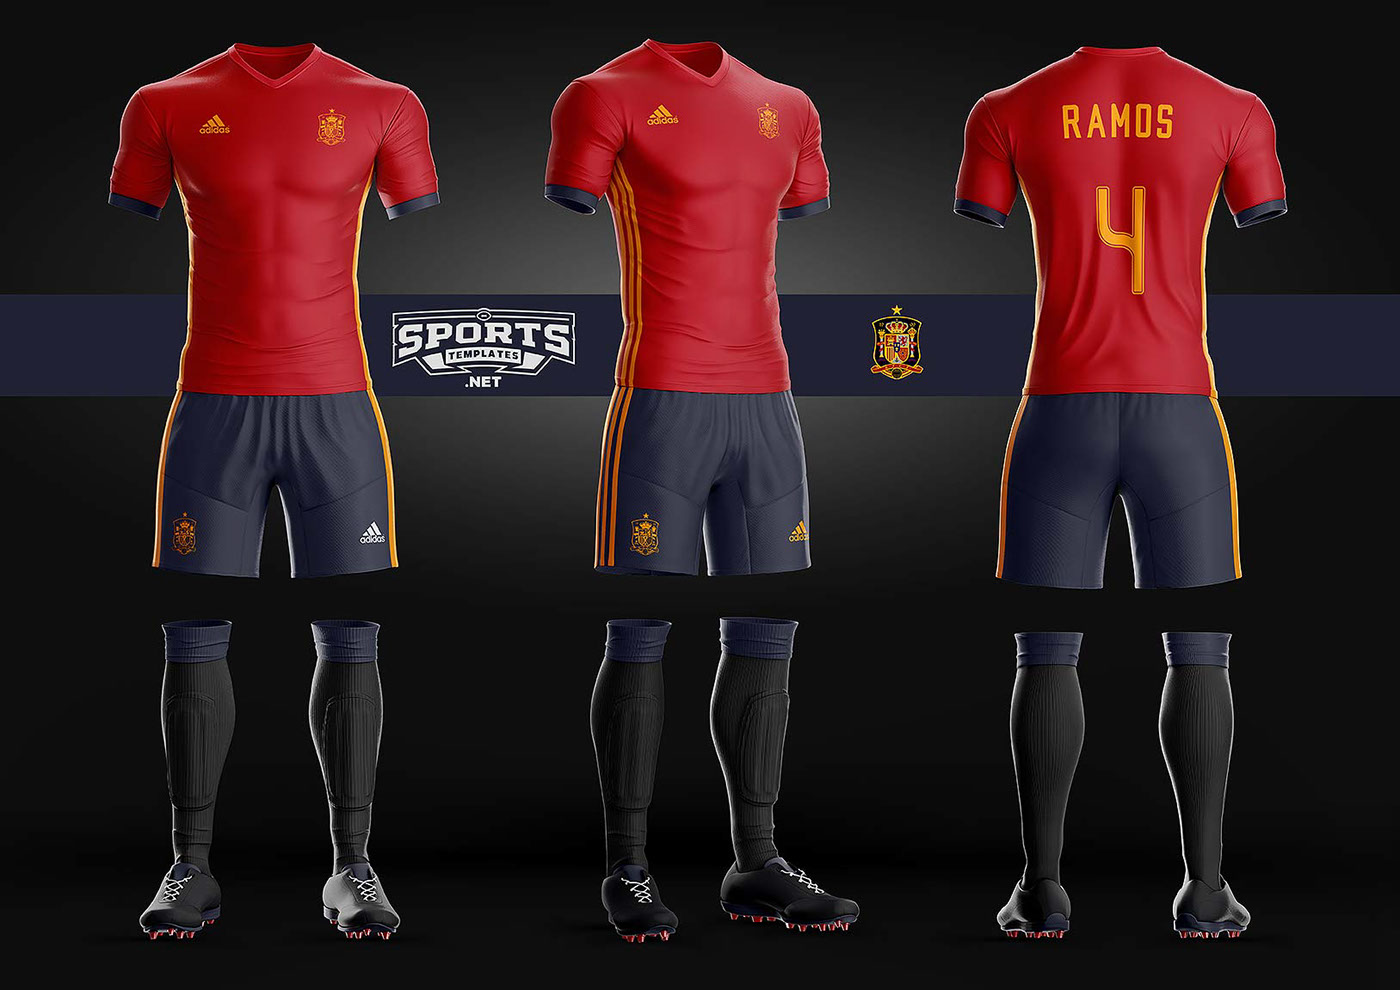 Goal Soccer Kit Uniform Template on Behance